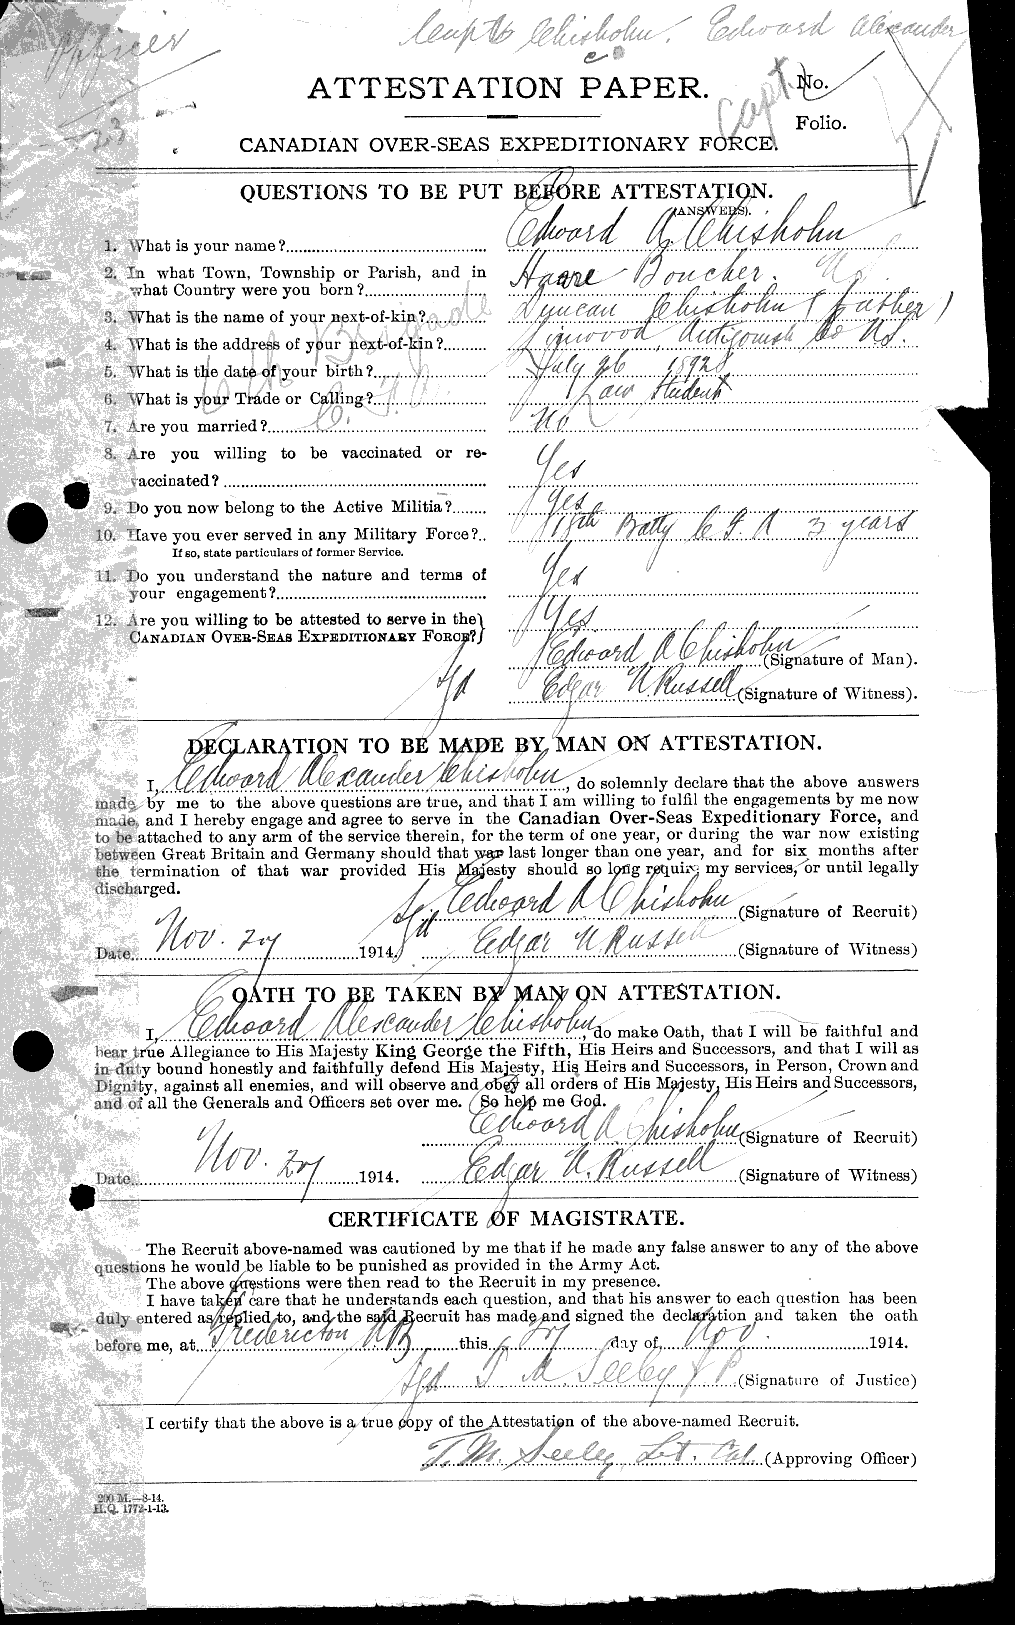 Dossiers du Personnel de la Première Guerre mondiale - CEC 018274a